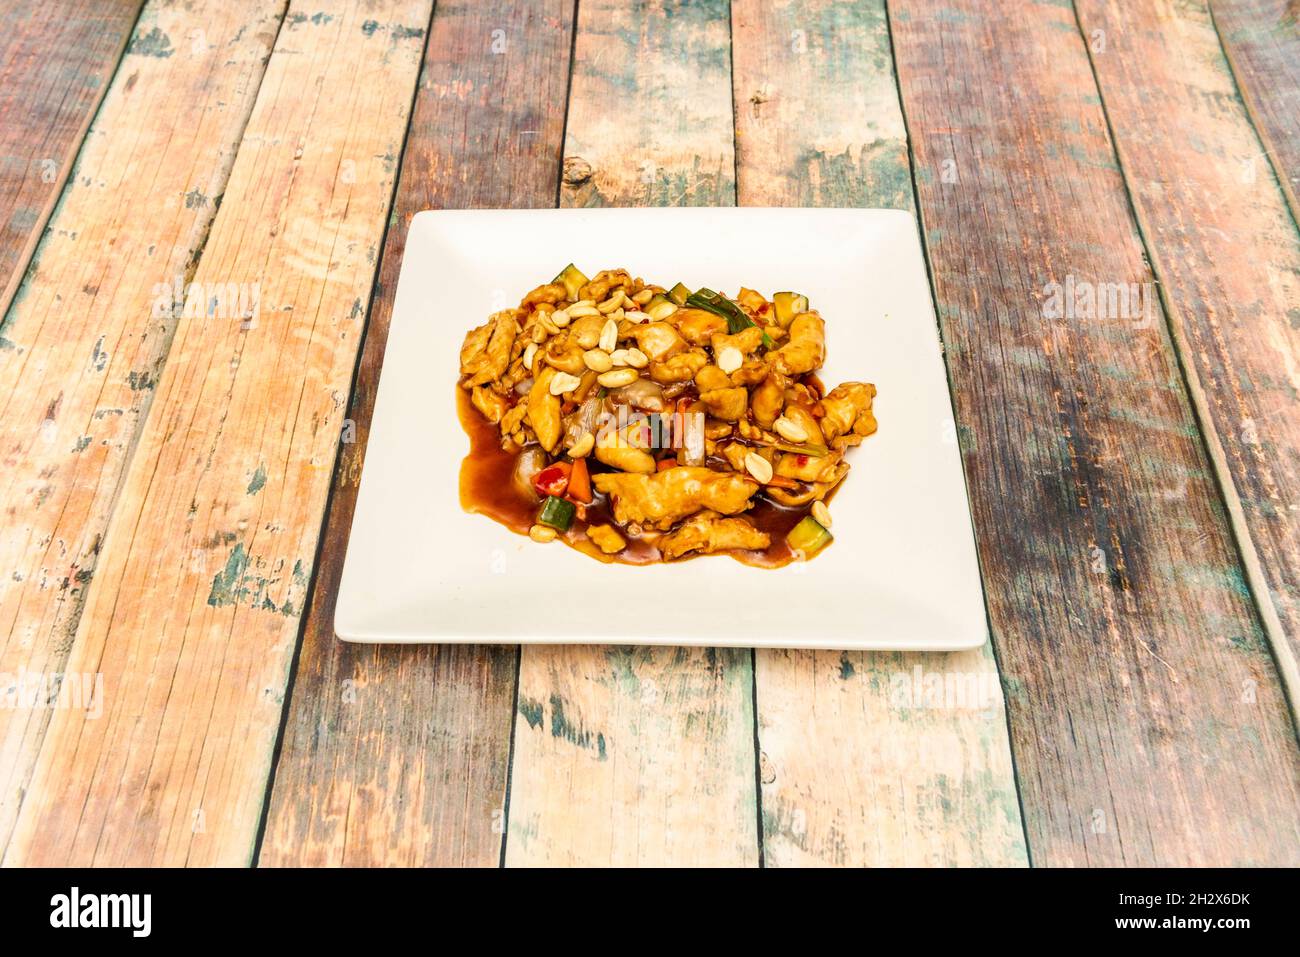 Recette chinoise typique de poulet kung pao haché avec noix, légumes wok et sauce soja Banque D'Images